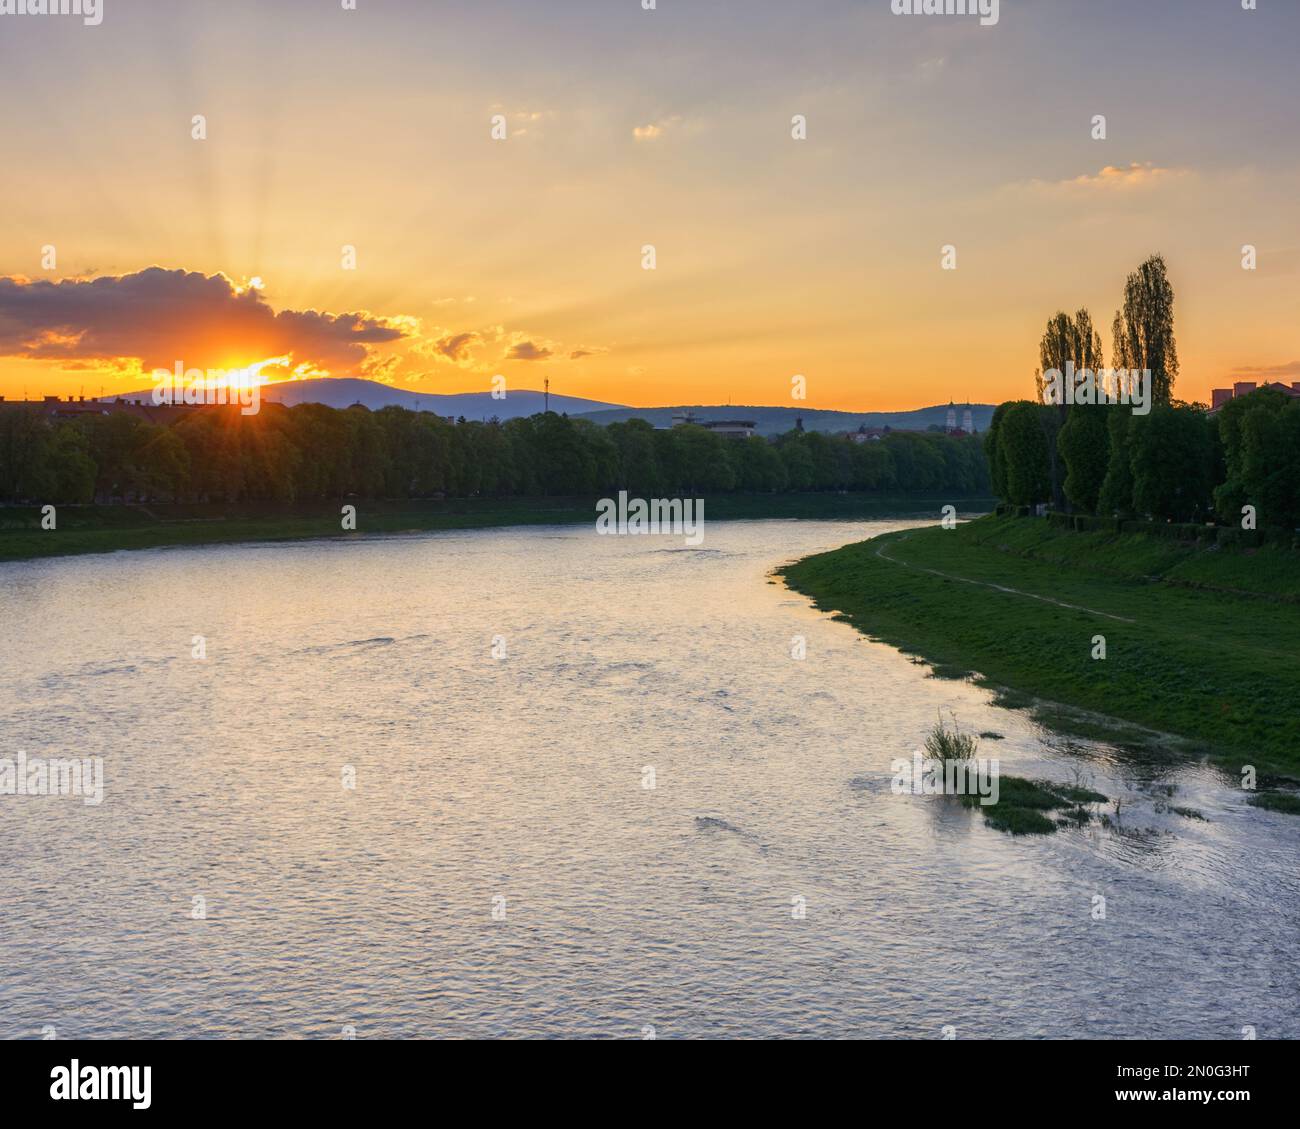 Herrlicher Sonnenaufgang am Ufer des Flusses uzh. Wunderschöne Stadtlandschaft im Zentrum von uschhorod im Frühling. Grasböcke der längsten Lindenallee in der Gegend Stockfoto